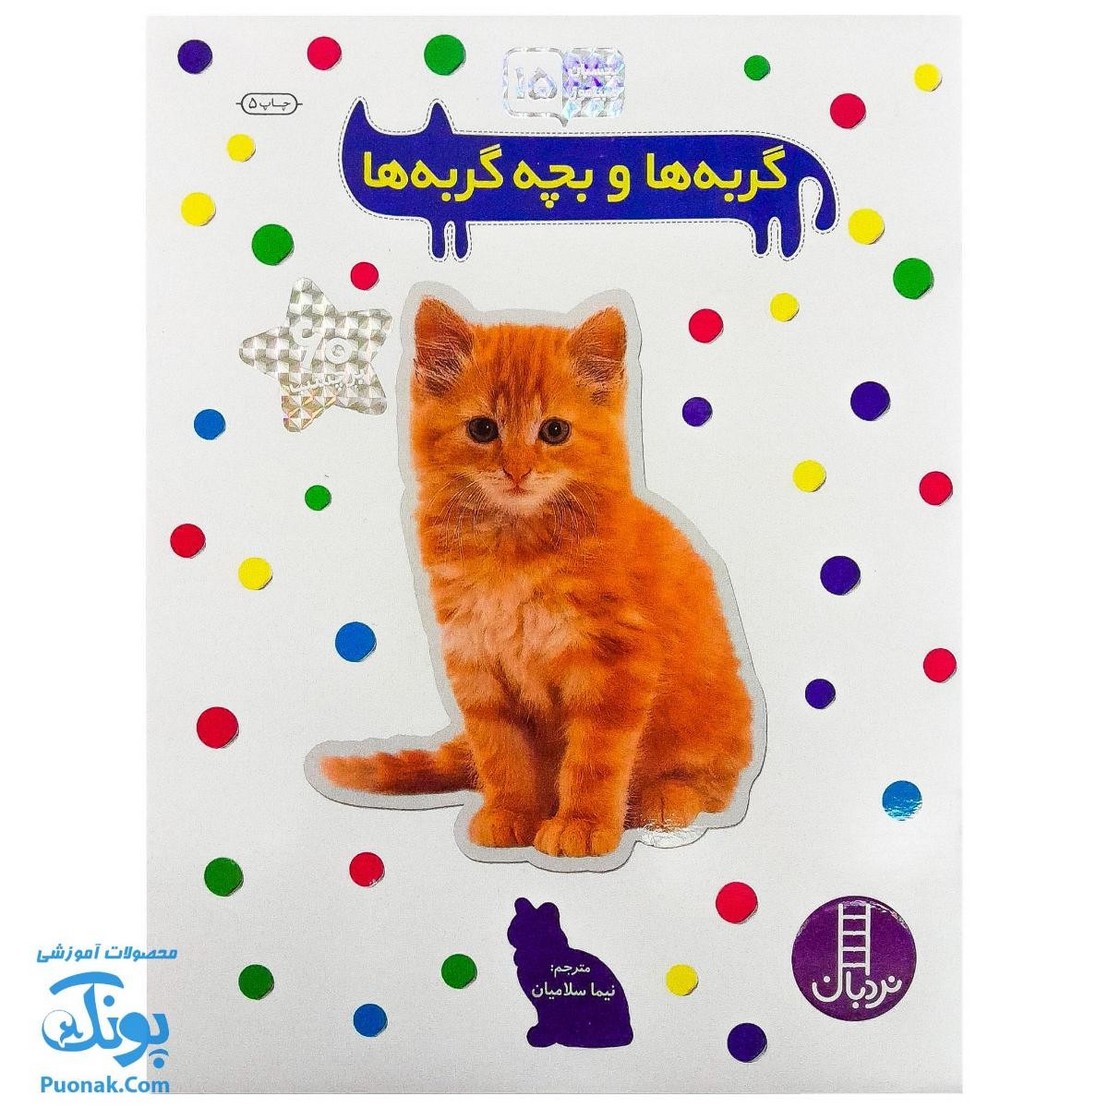 کتاب گربه ها و بچه گربه ها بچسبان و بیاموز ۱۵ به همراه ۶۰ برچسب